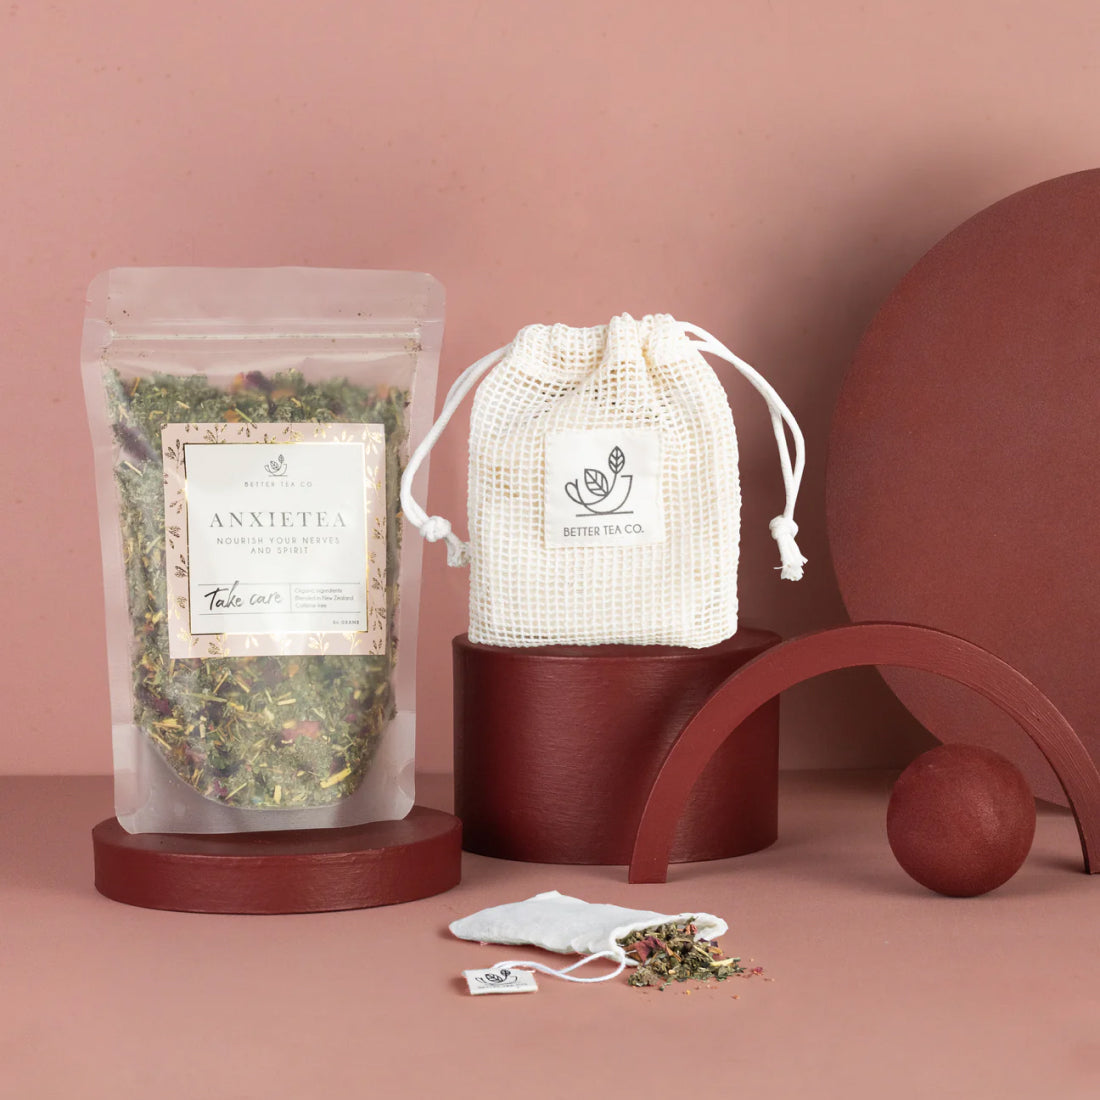 Um saco de chá Anxietea e saquetas de chá reutilizáveis